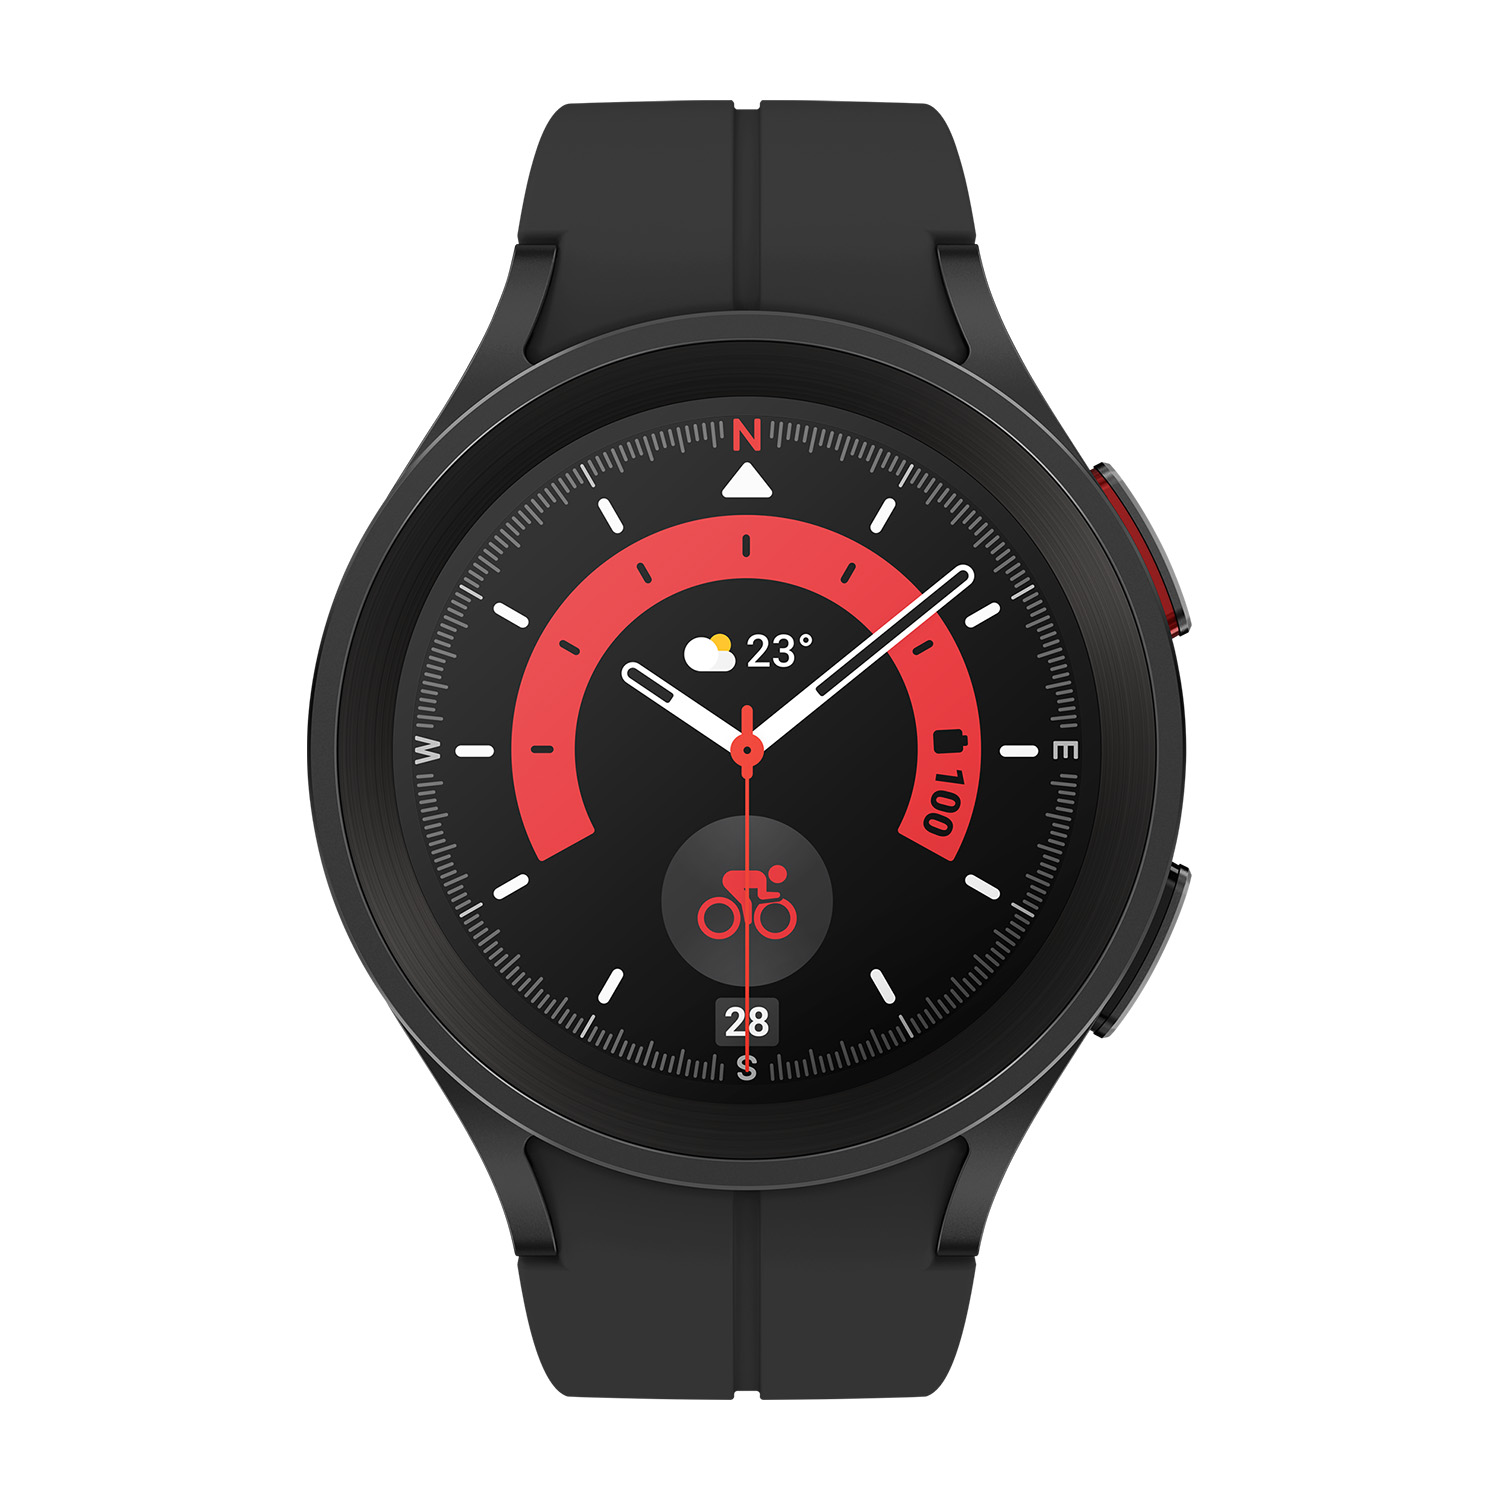 Samsung Galaxy Watch 5 Pro in schwarz | Smartwatch | Bis zu 80 Stunden Akkulaufzeit | Wasserdicht bis 5 ATM | Blutdruckmessung | Sturzerkennung | AMOLED Display 